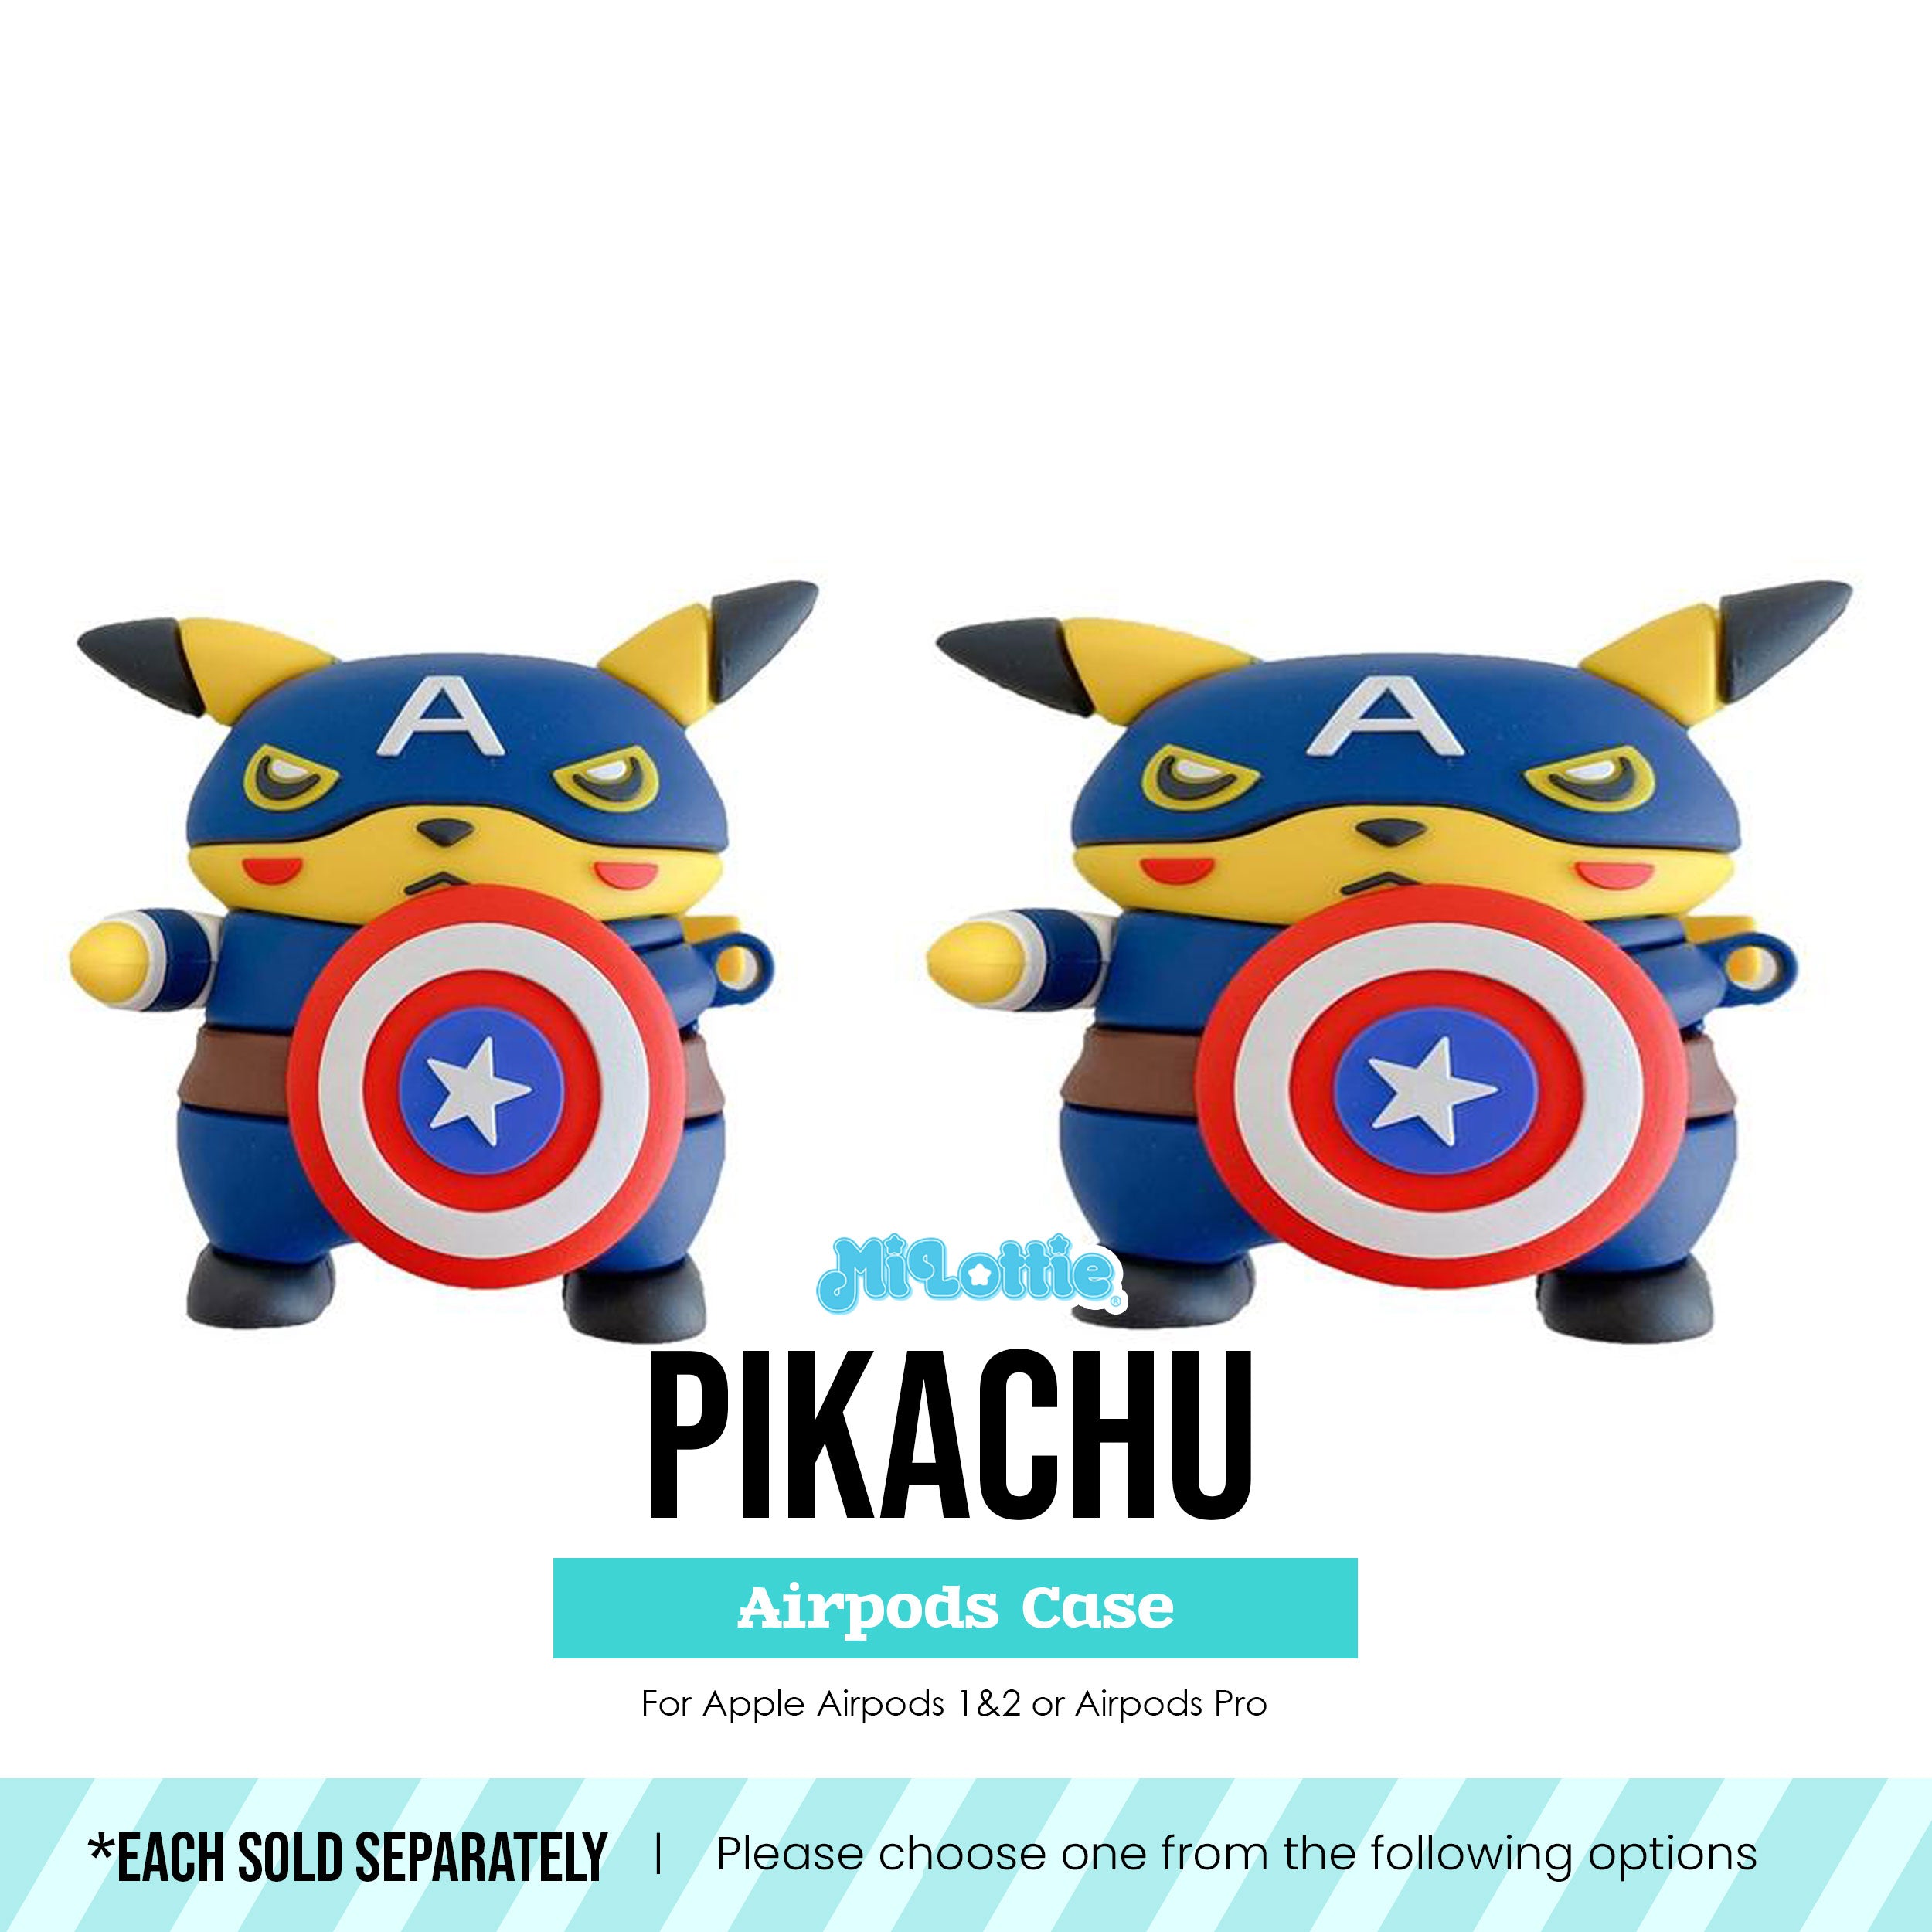 Pikachu in Captain America Costume Pokemon Airpods Case